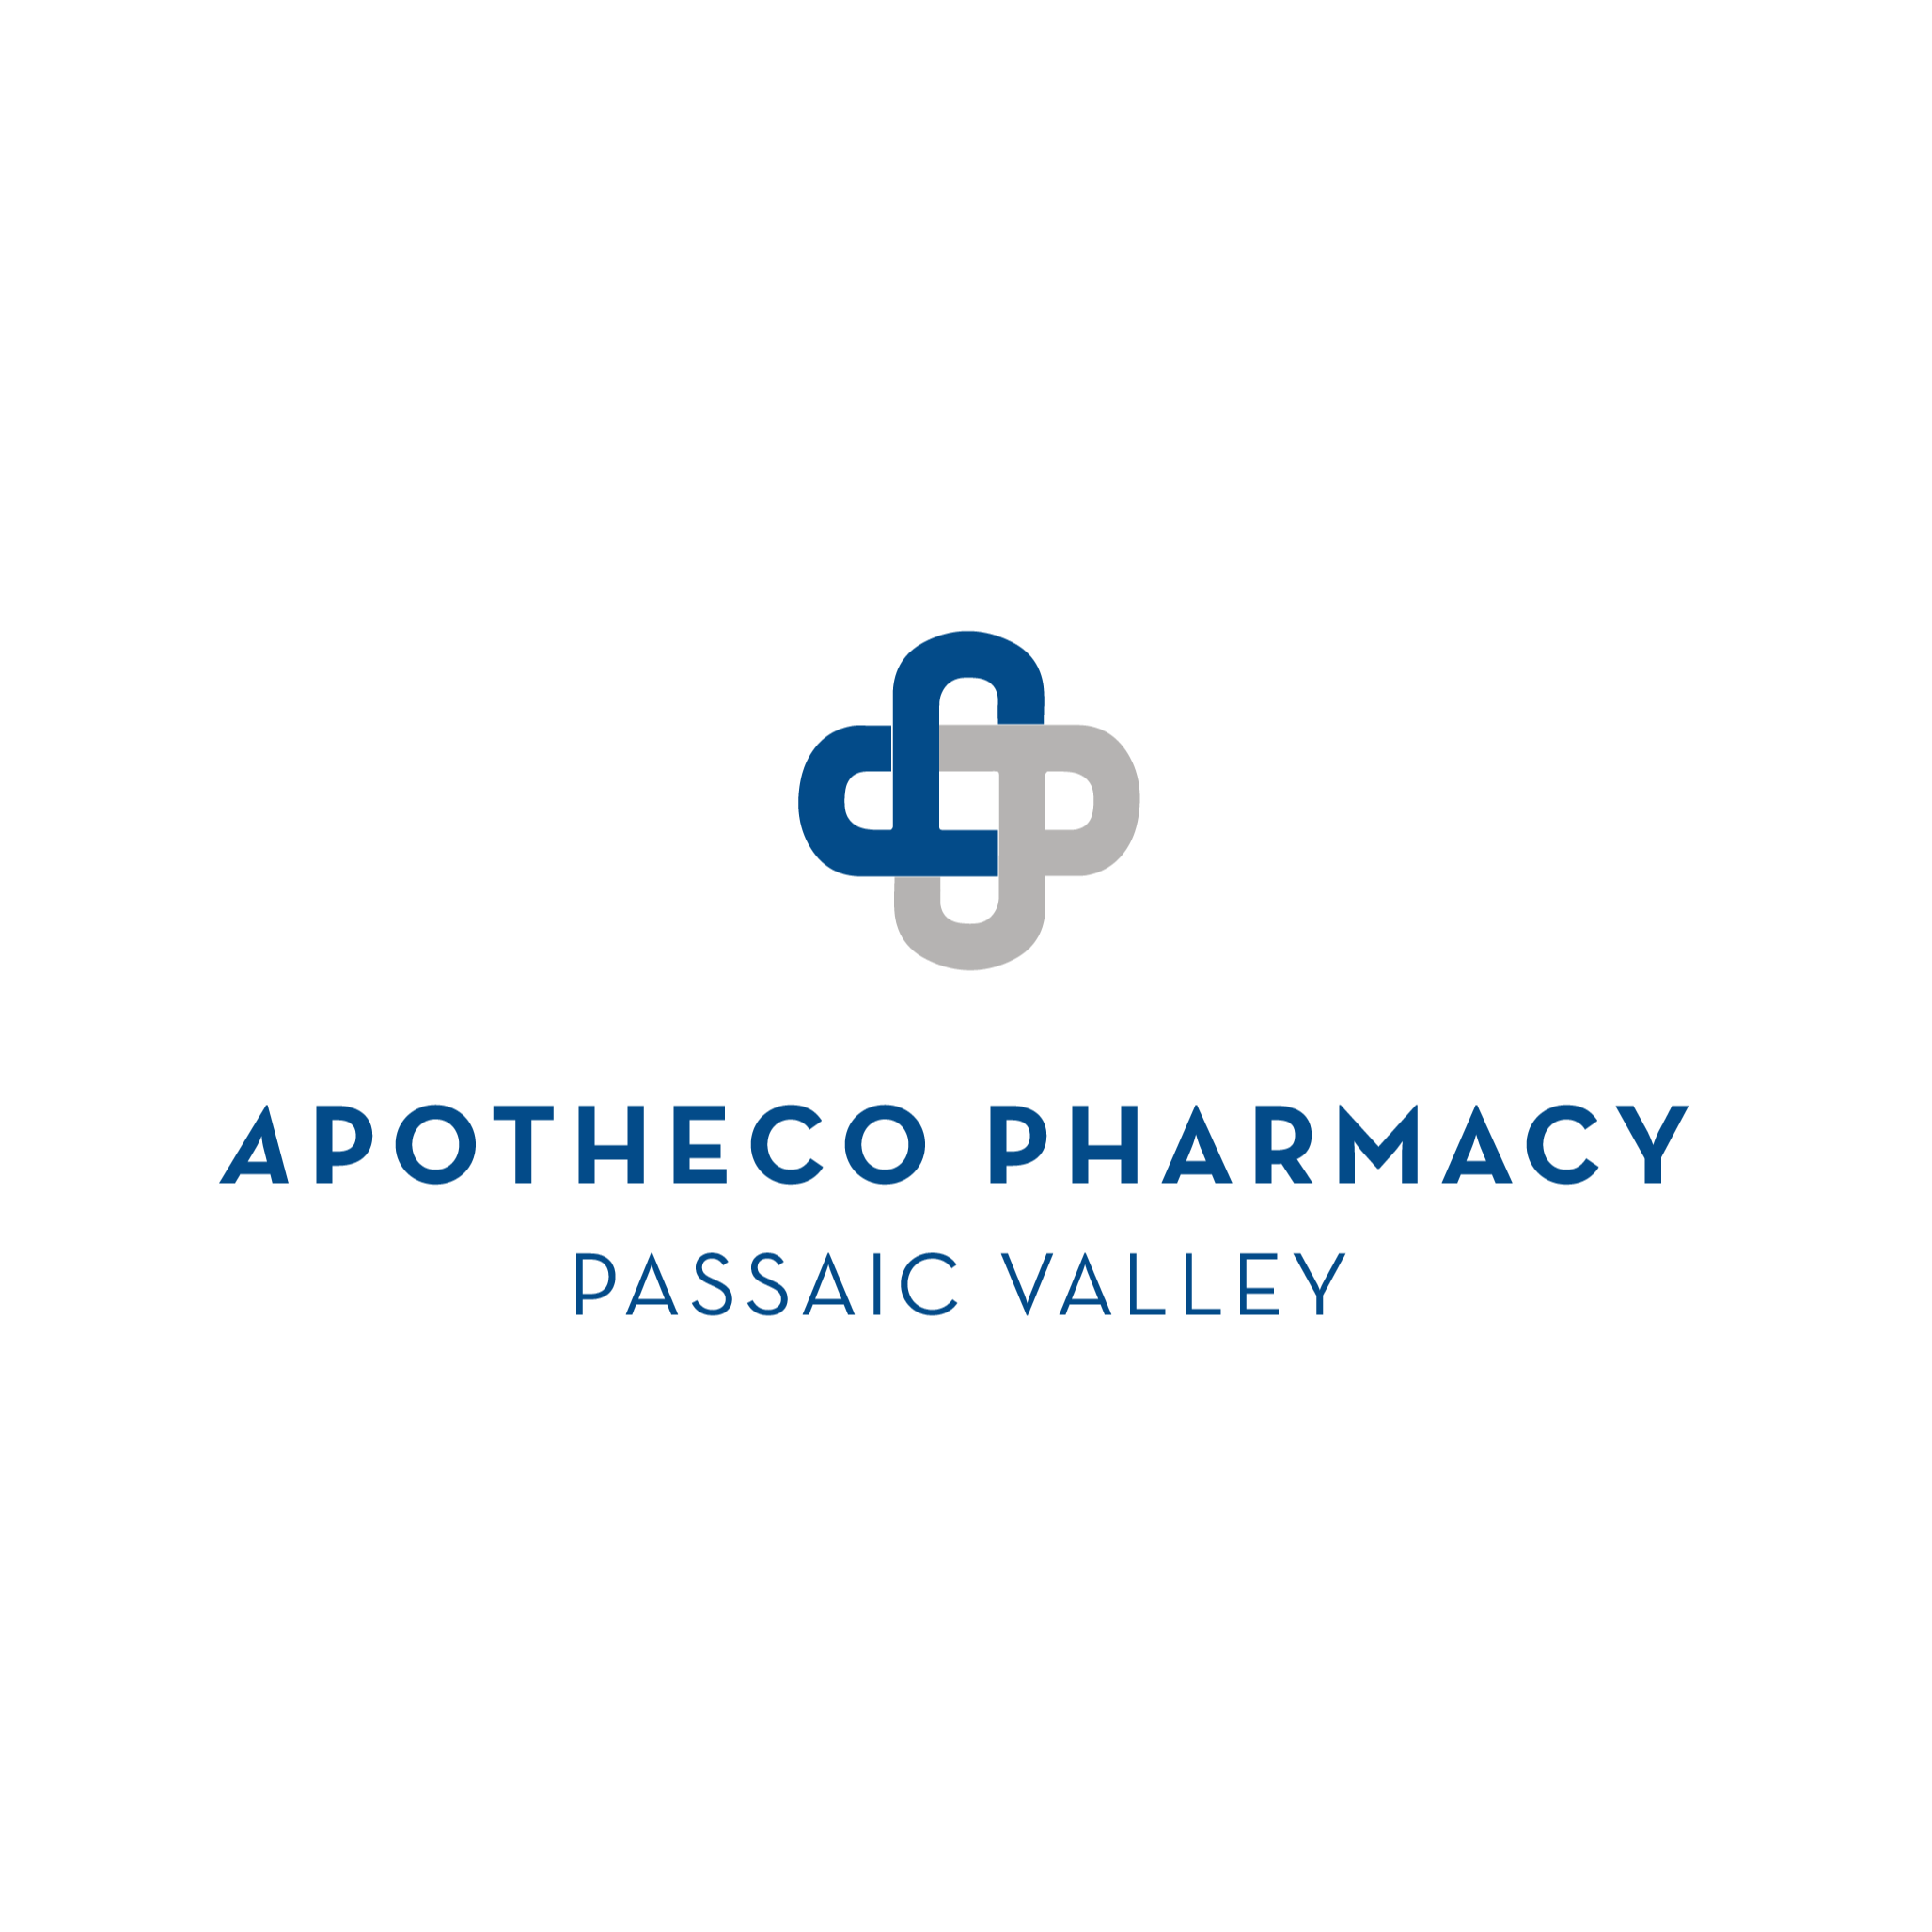 Apotheco Pharmacy Passaic Valley - Dermatology Pharmacy Logo